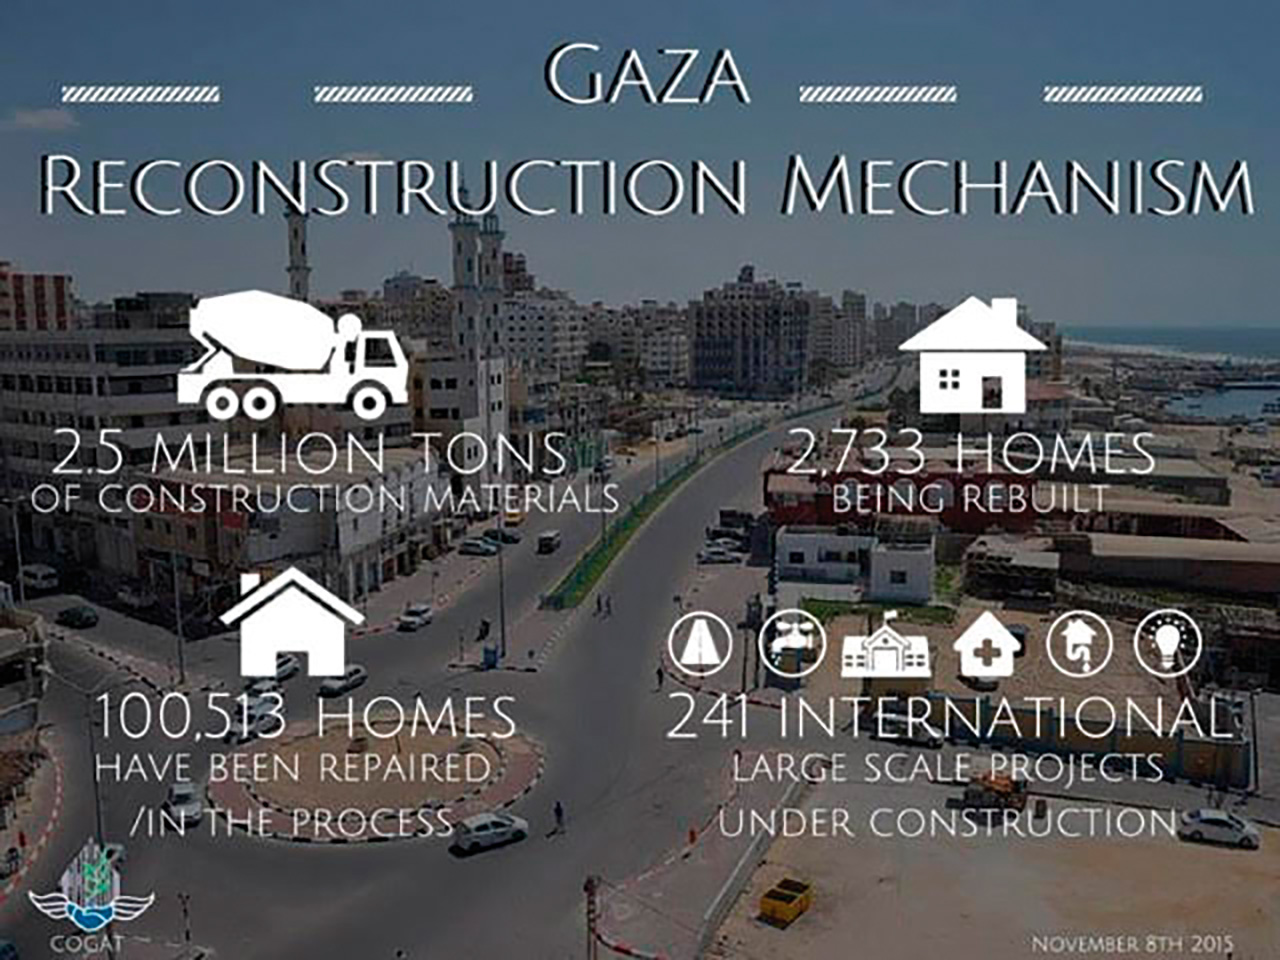 Israelin toimittama apu Gazaan ”Gazan jälleenrakennusmekanismin” puitteissa vuosina 2014-2015. Projekti on edelleen käynnissä, ja vuoteen 2017 mennessä mm. rakennusmateriaalia on toimitettu Gazaan jo 6,5 miljoonaa tonnia.